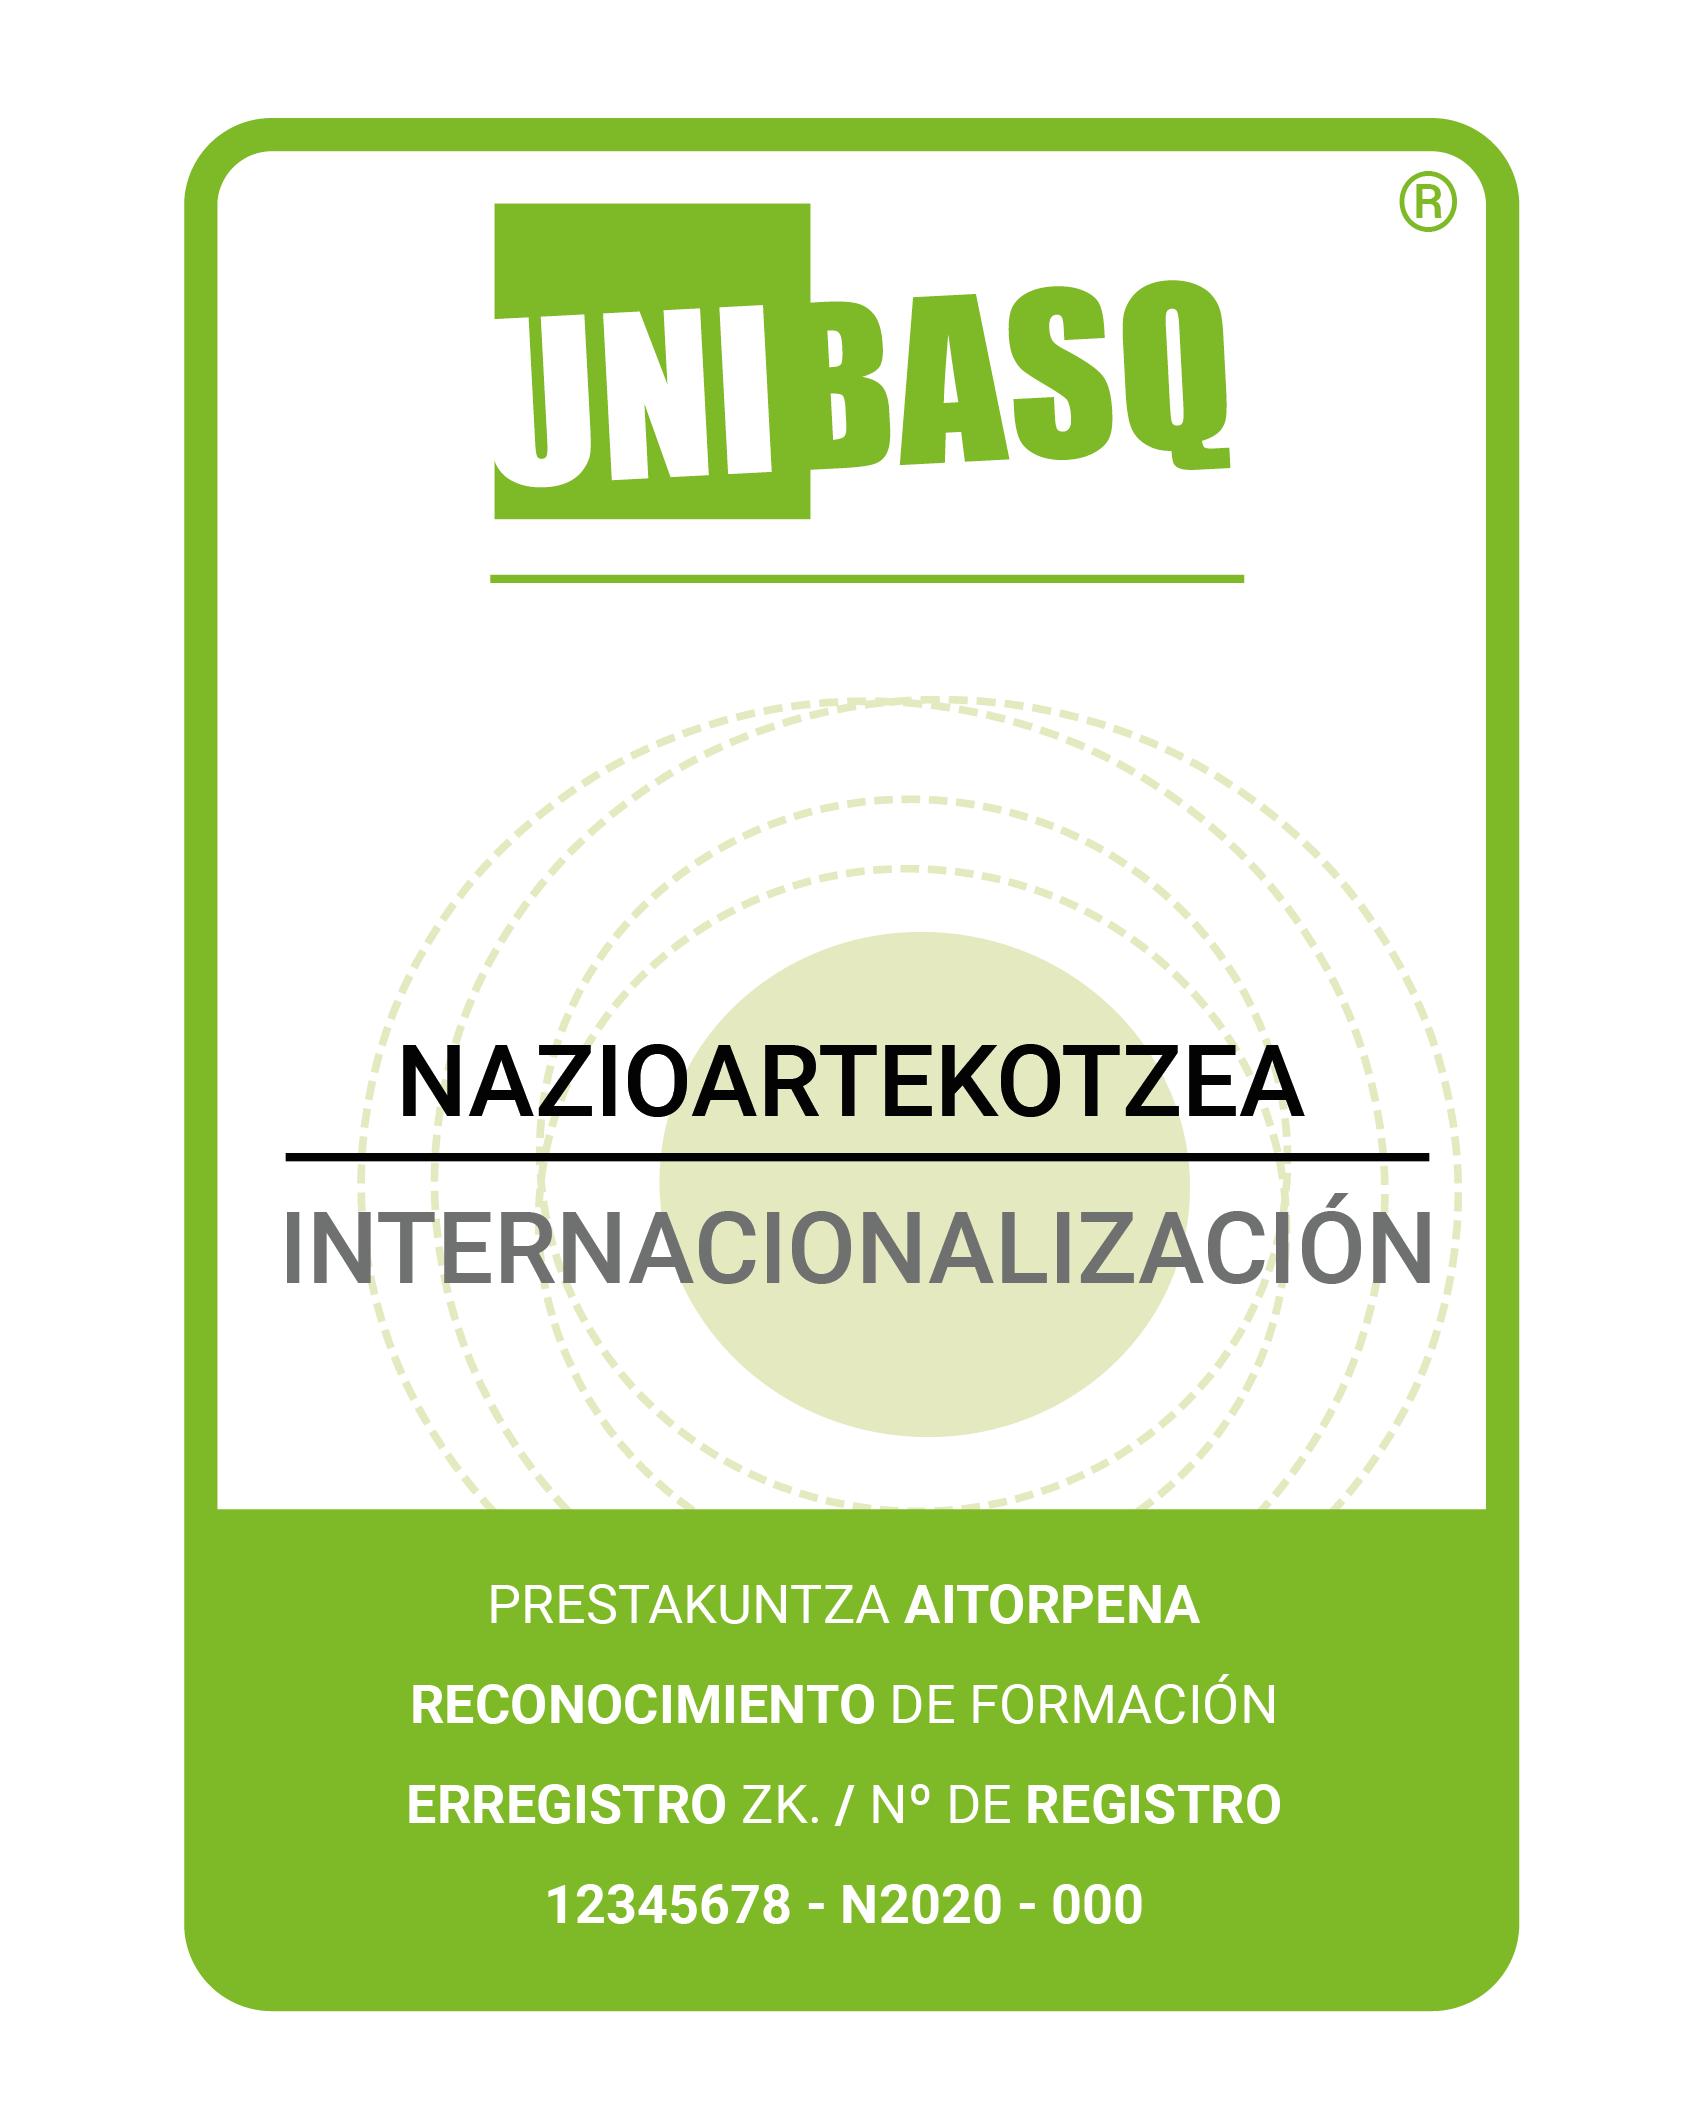 Icono del sello de calidad de Unibasq de Internacionalización